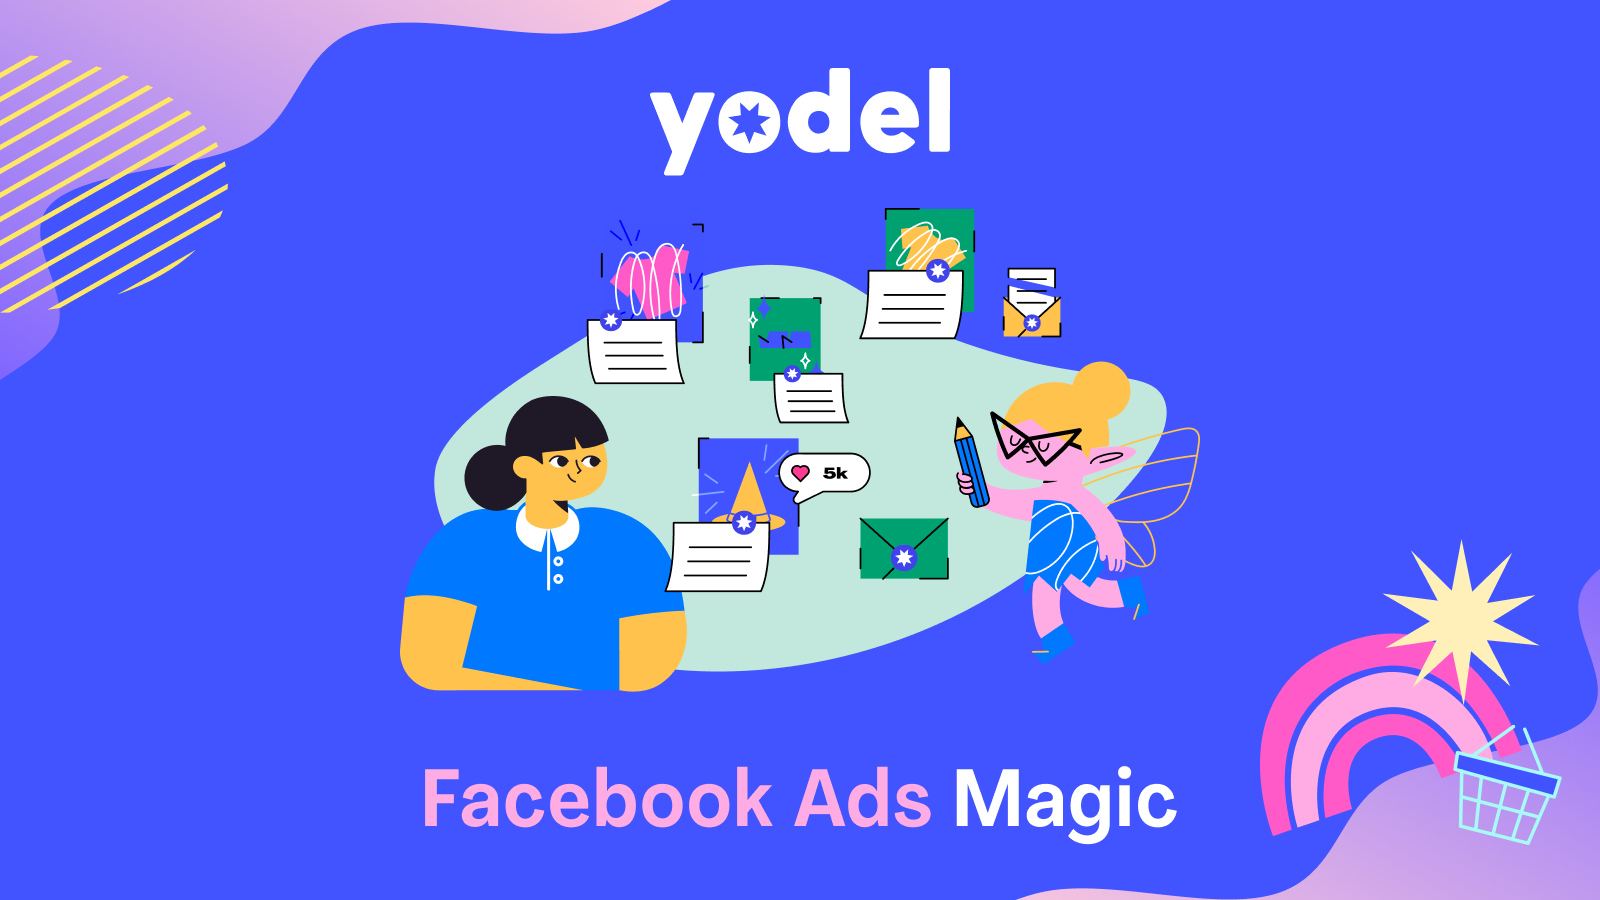 Facebook Ads Magic af Yodel